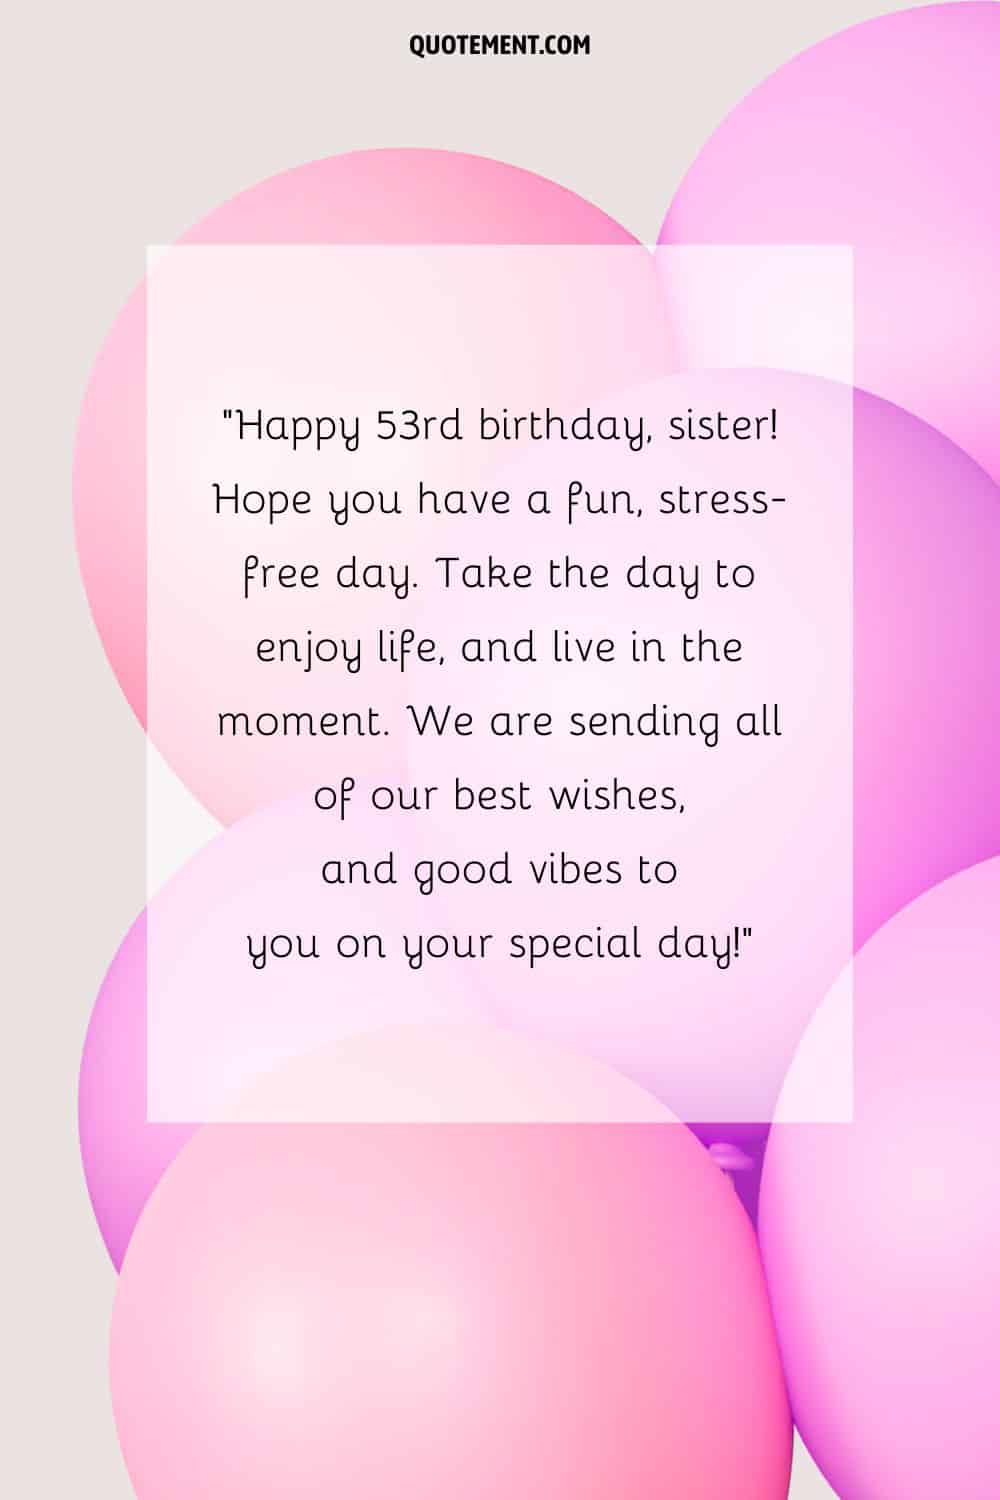 Precioso mensaje para una hermana que cumple 53 años y globos rosas y morados de fondo